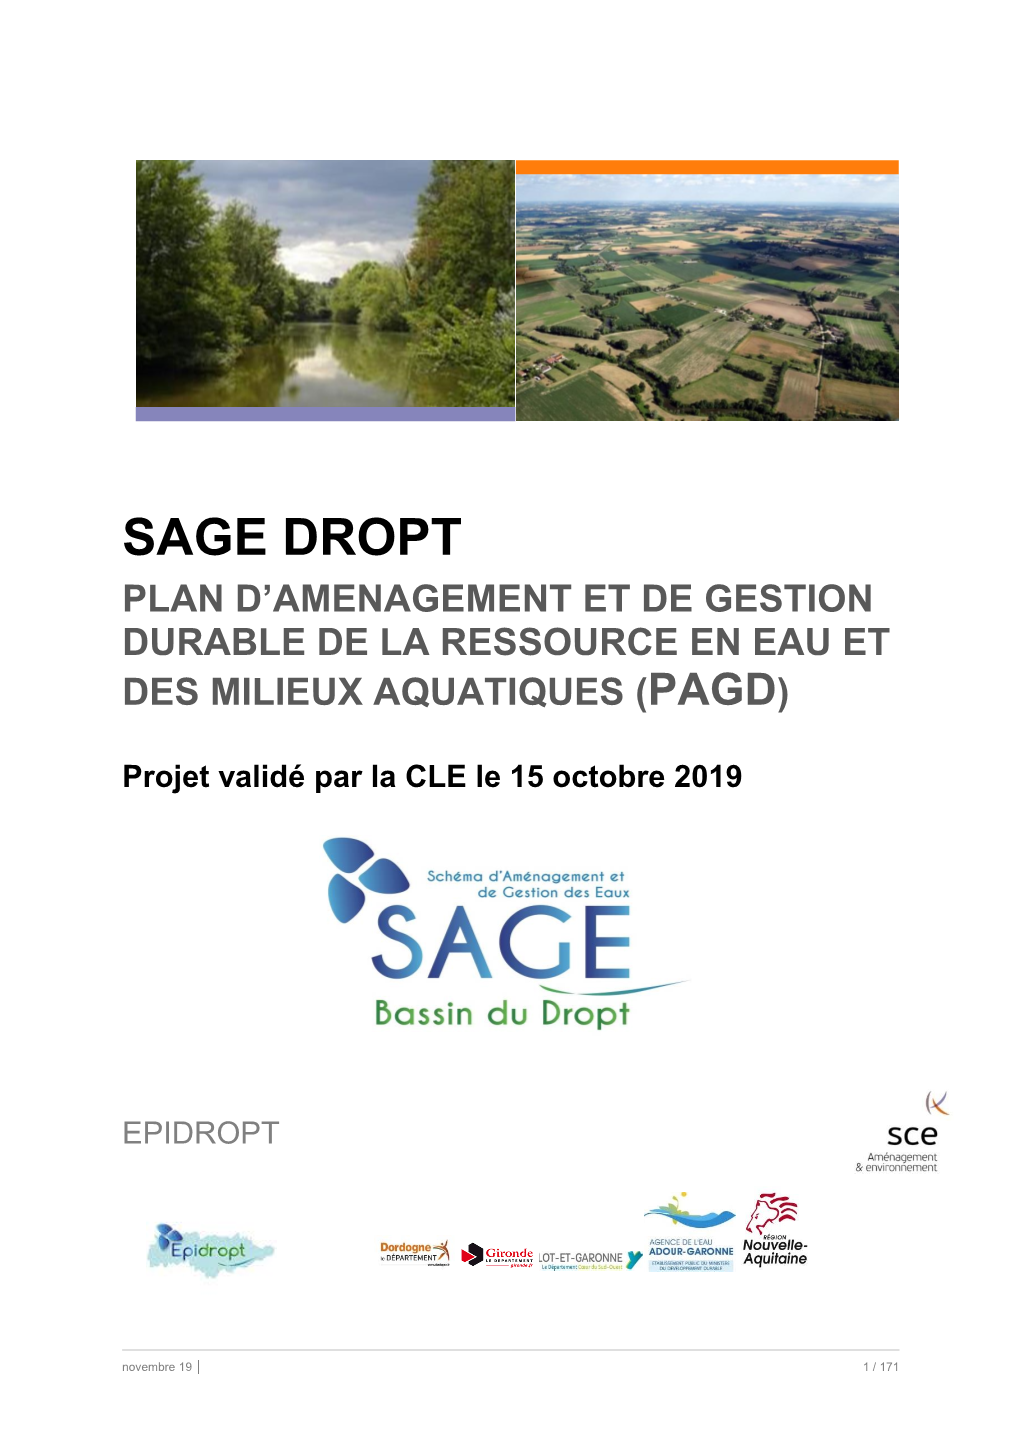 Sage Dropt Plan D’Amenagement Et De Gestion Durable De La Ressource En Eau Et Des Milieux Aquatiques (Pagd)